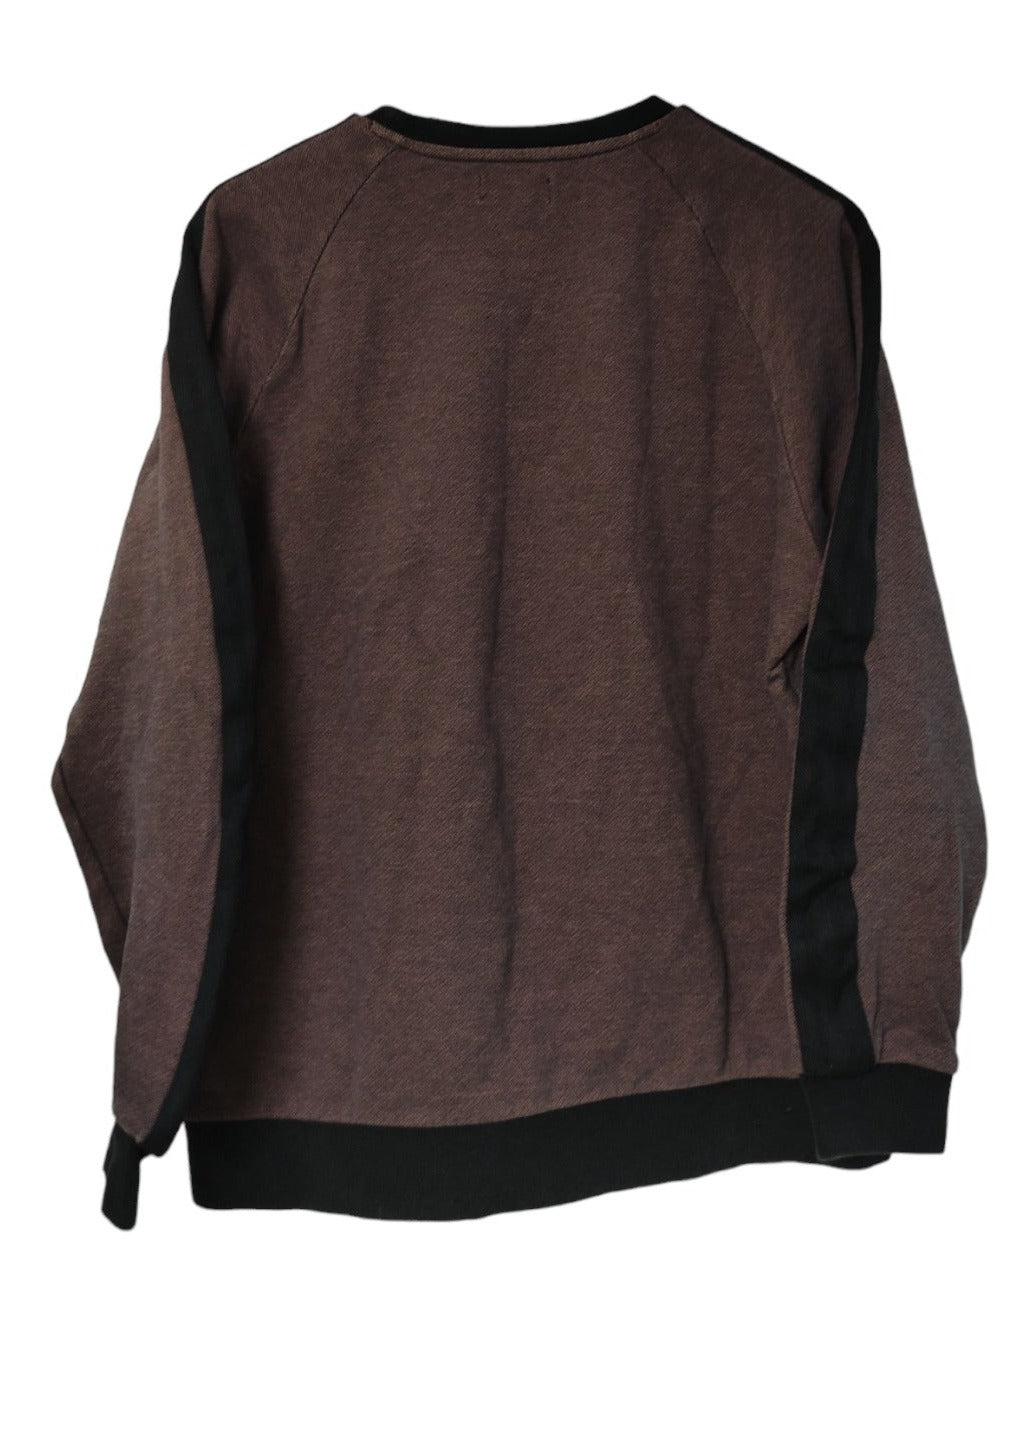 Γυναικεία Φούτερ Μπλούζα ADIDAS σε Μαύρο-Σομόν χρώμα (M/L)